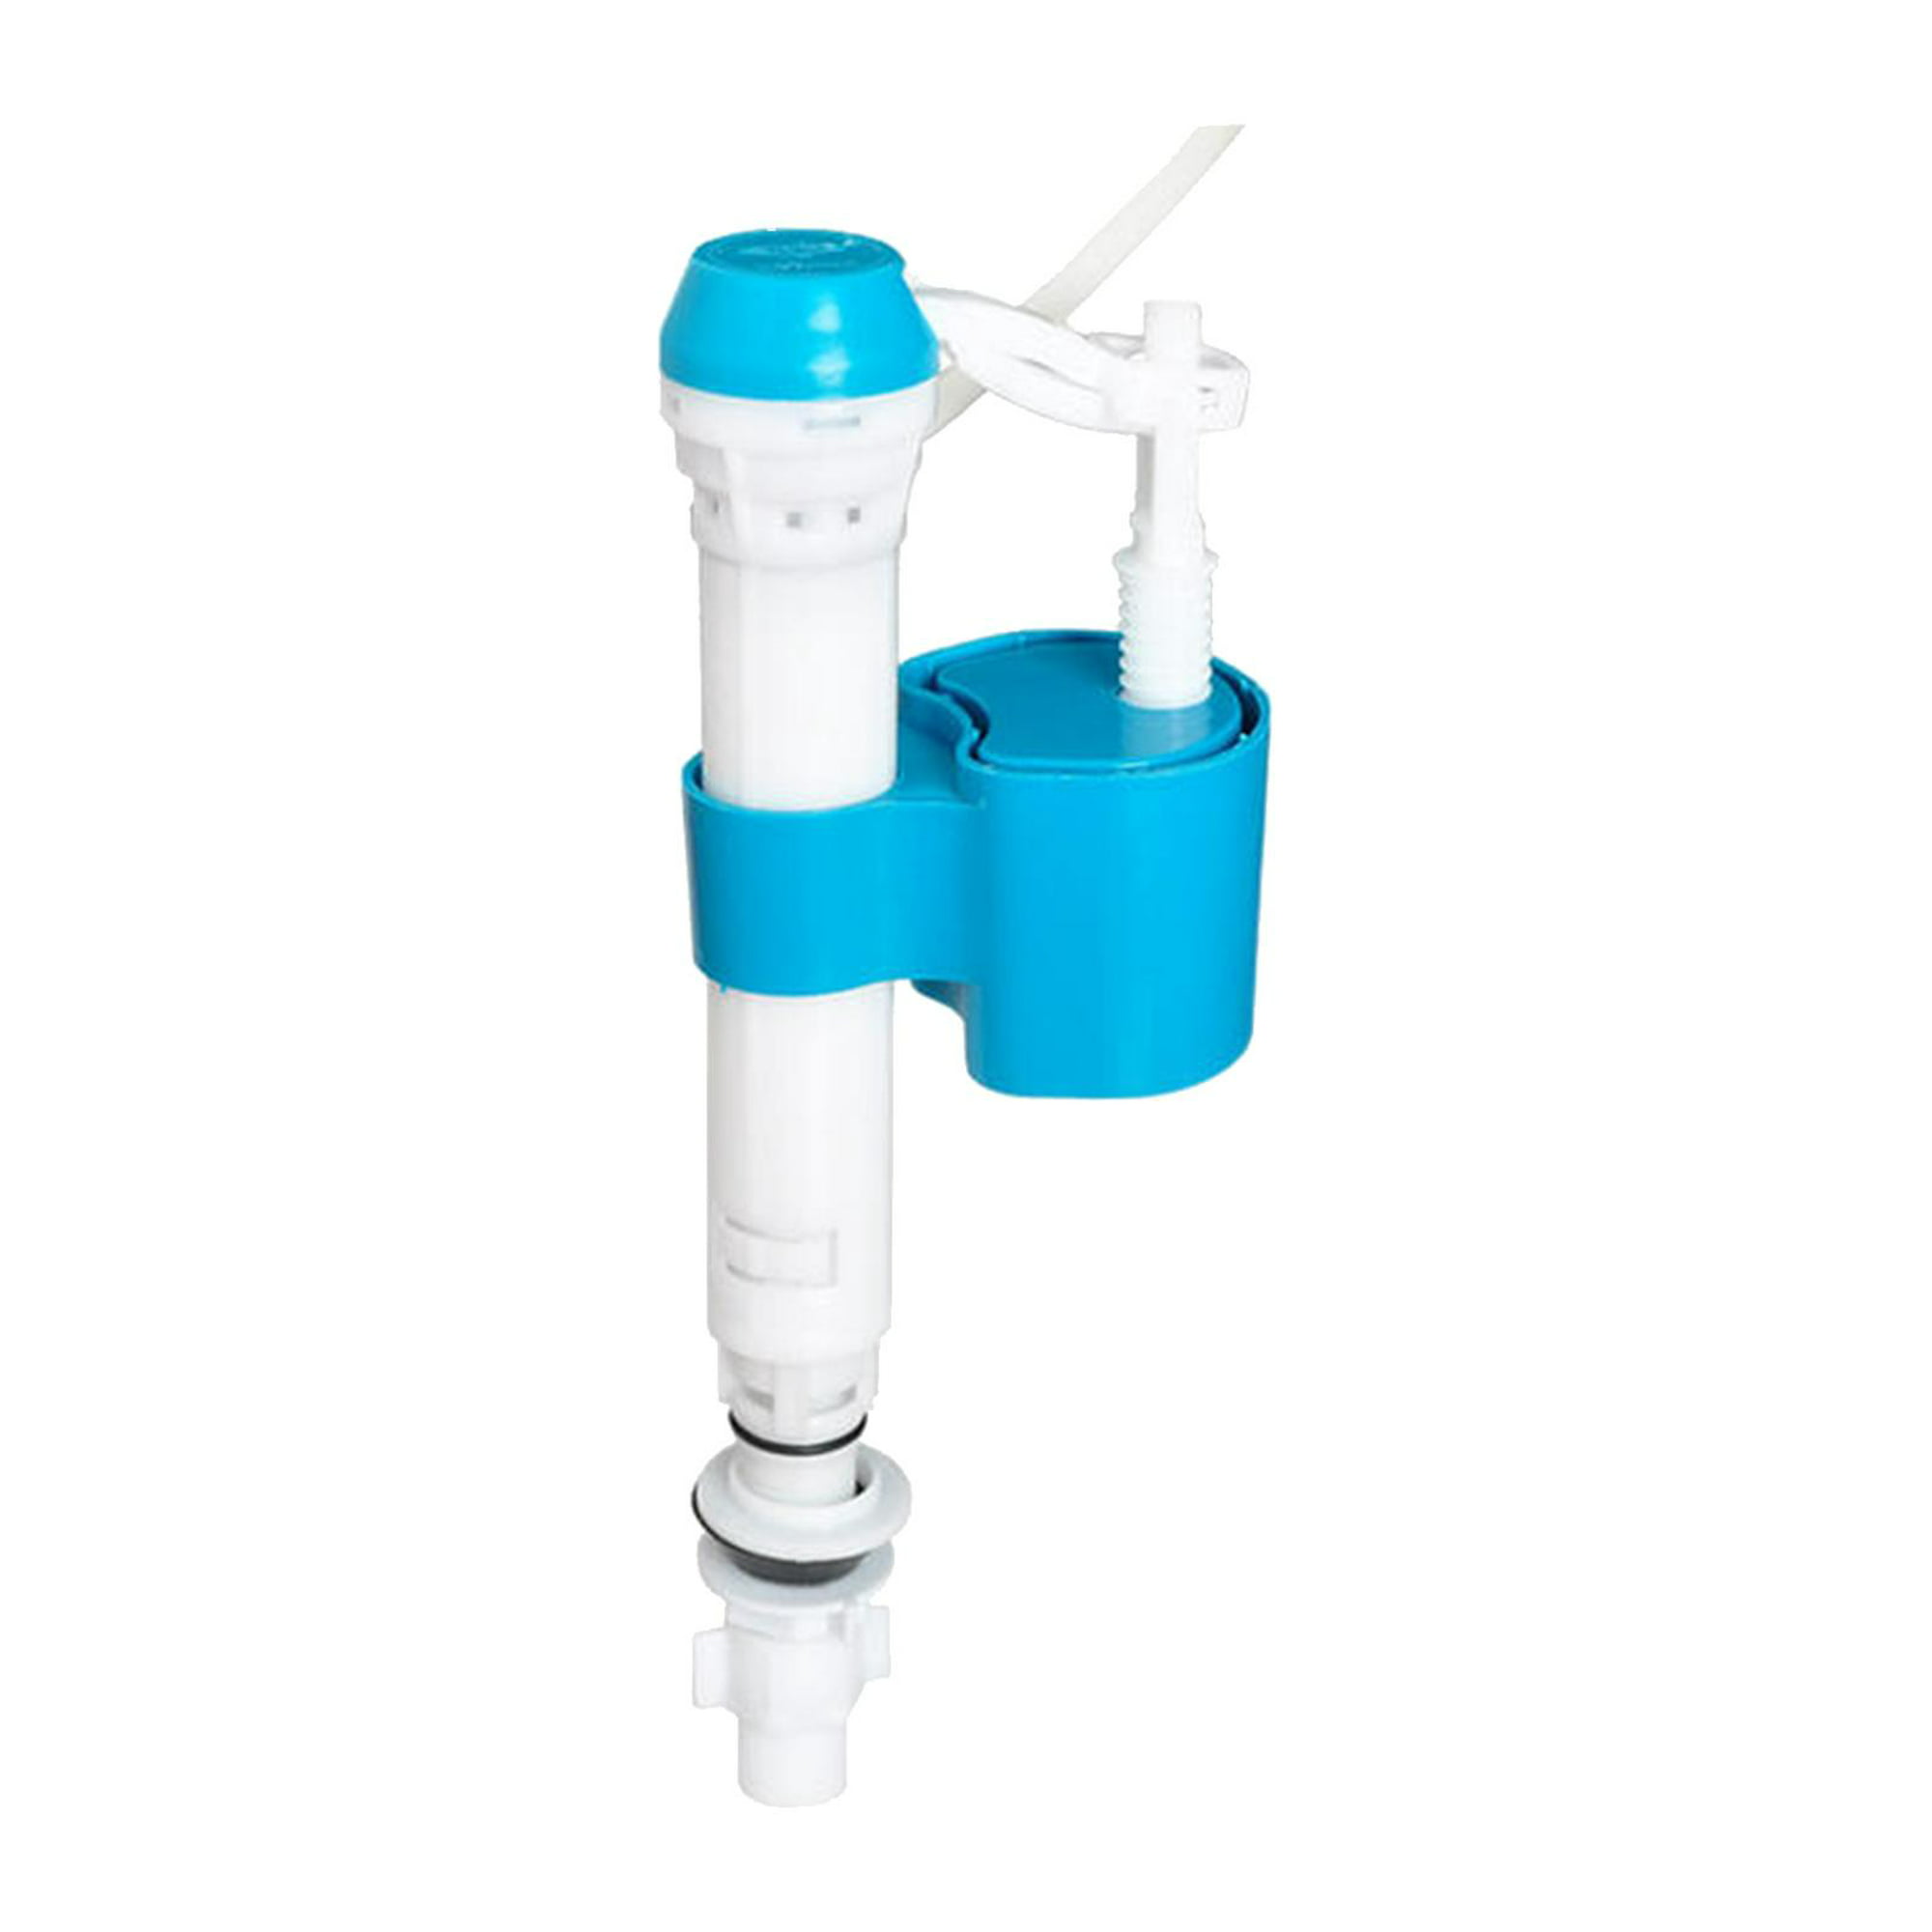 Válvula de llenado de cisterna de inodoro, válvula de llenado de cisterna  de inodoro de entrada inferior ajustable de 1,27 cm, altura de nivel de